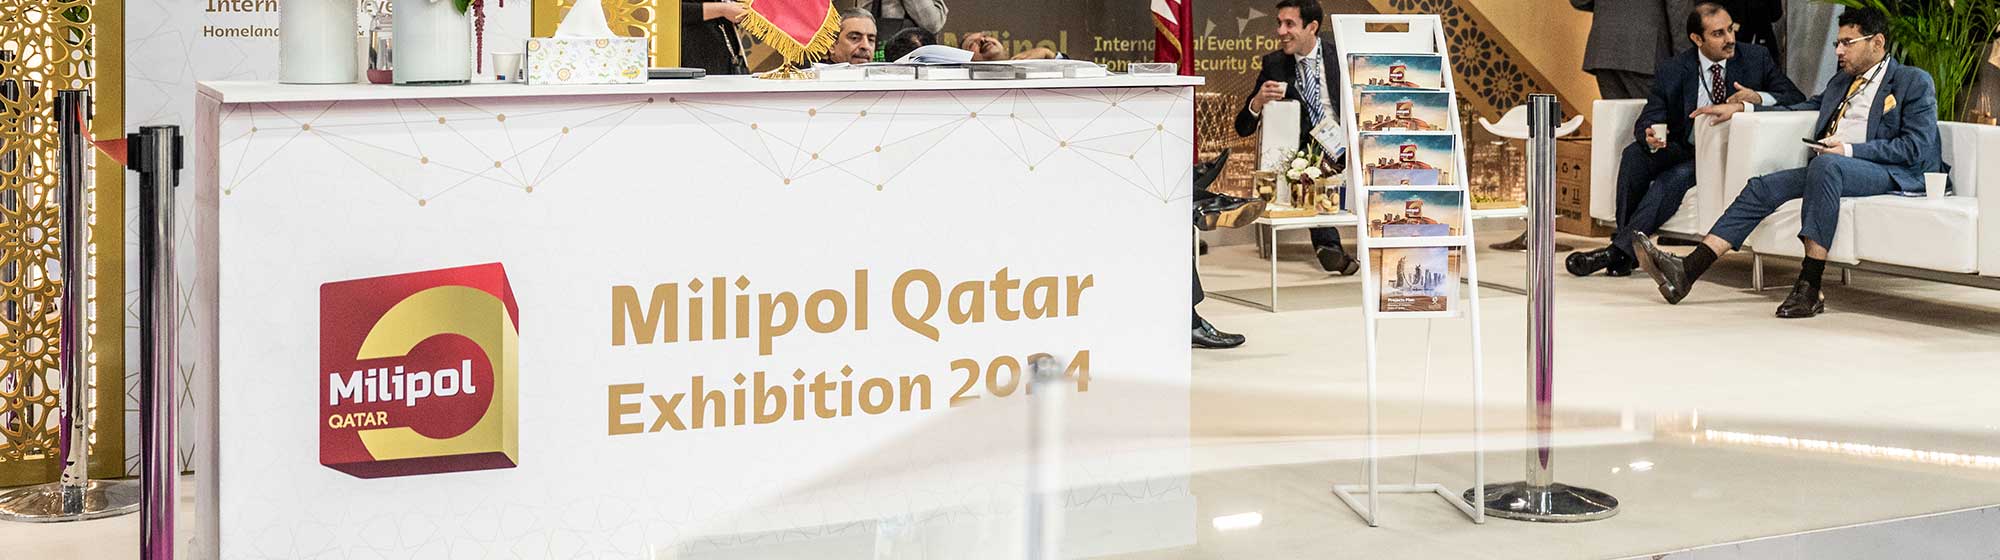 Milpol Qatar’s stand